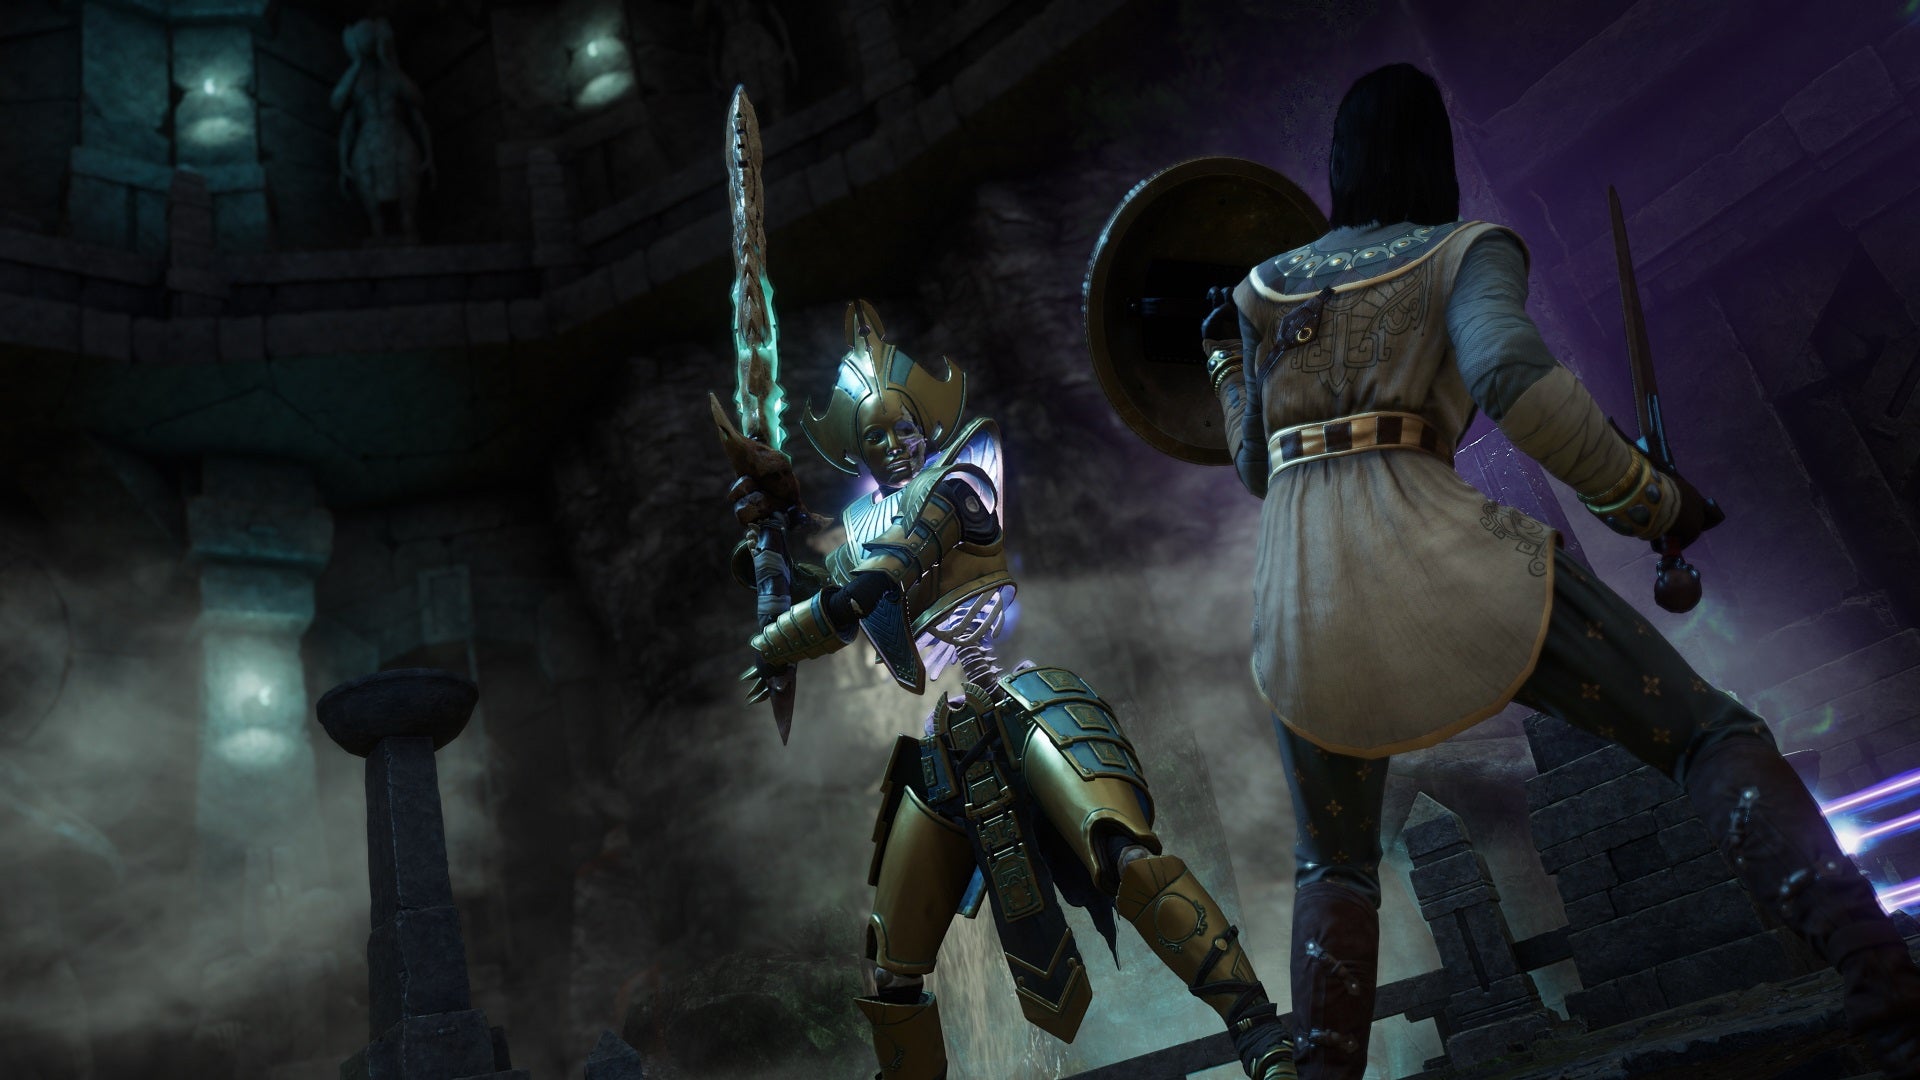 Персонаж из Нового Света, вооруженный мечом и щитом, сталкивается с бронированным скелетом, несущим большой меч.